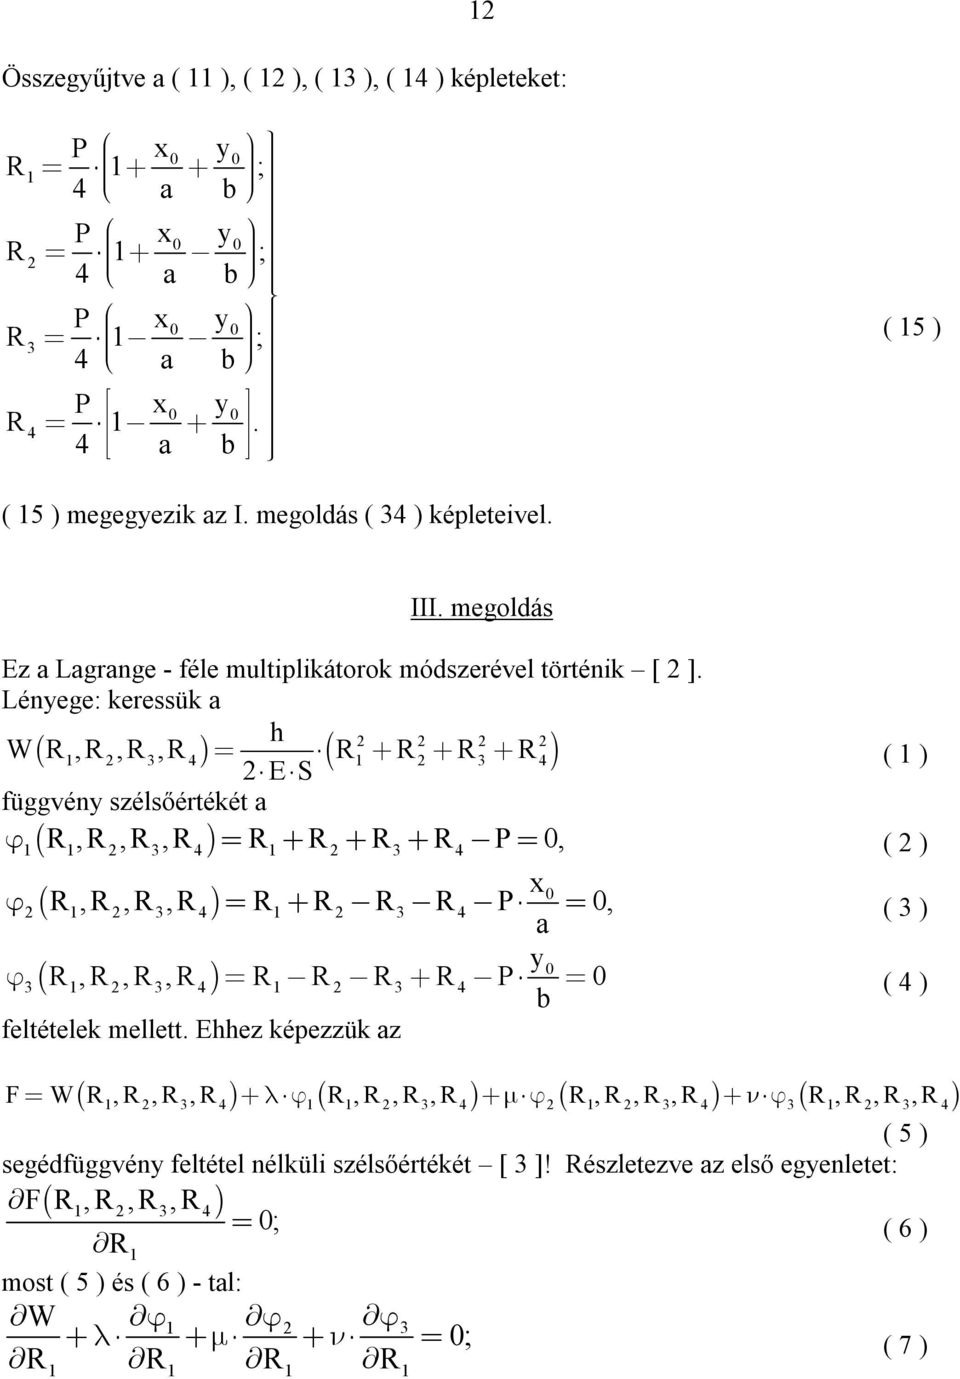 Lényege: keressük a W 1,,, 1 ES ( 1 ) függvény szélsőértékét a 1 1,,, 1 P, ( ) x 1,,, 1 P, ( ) a y 1,,, 1 P ( ) b feltételek mellett.